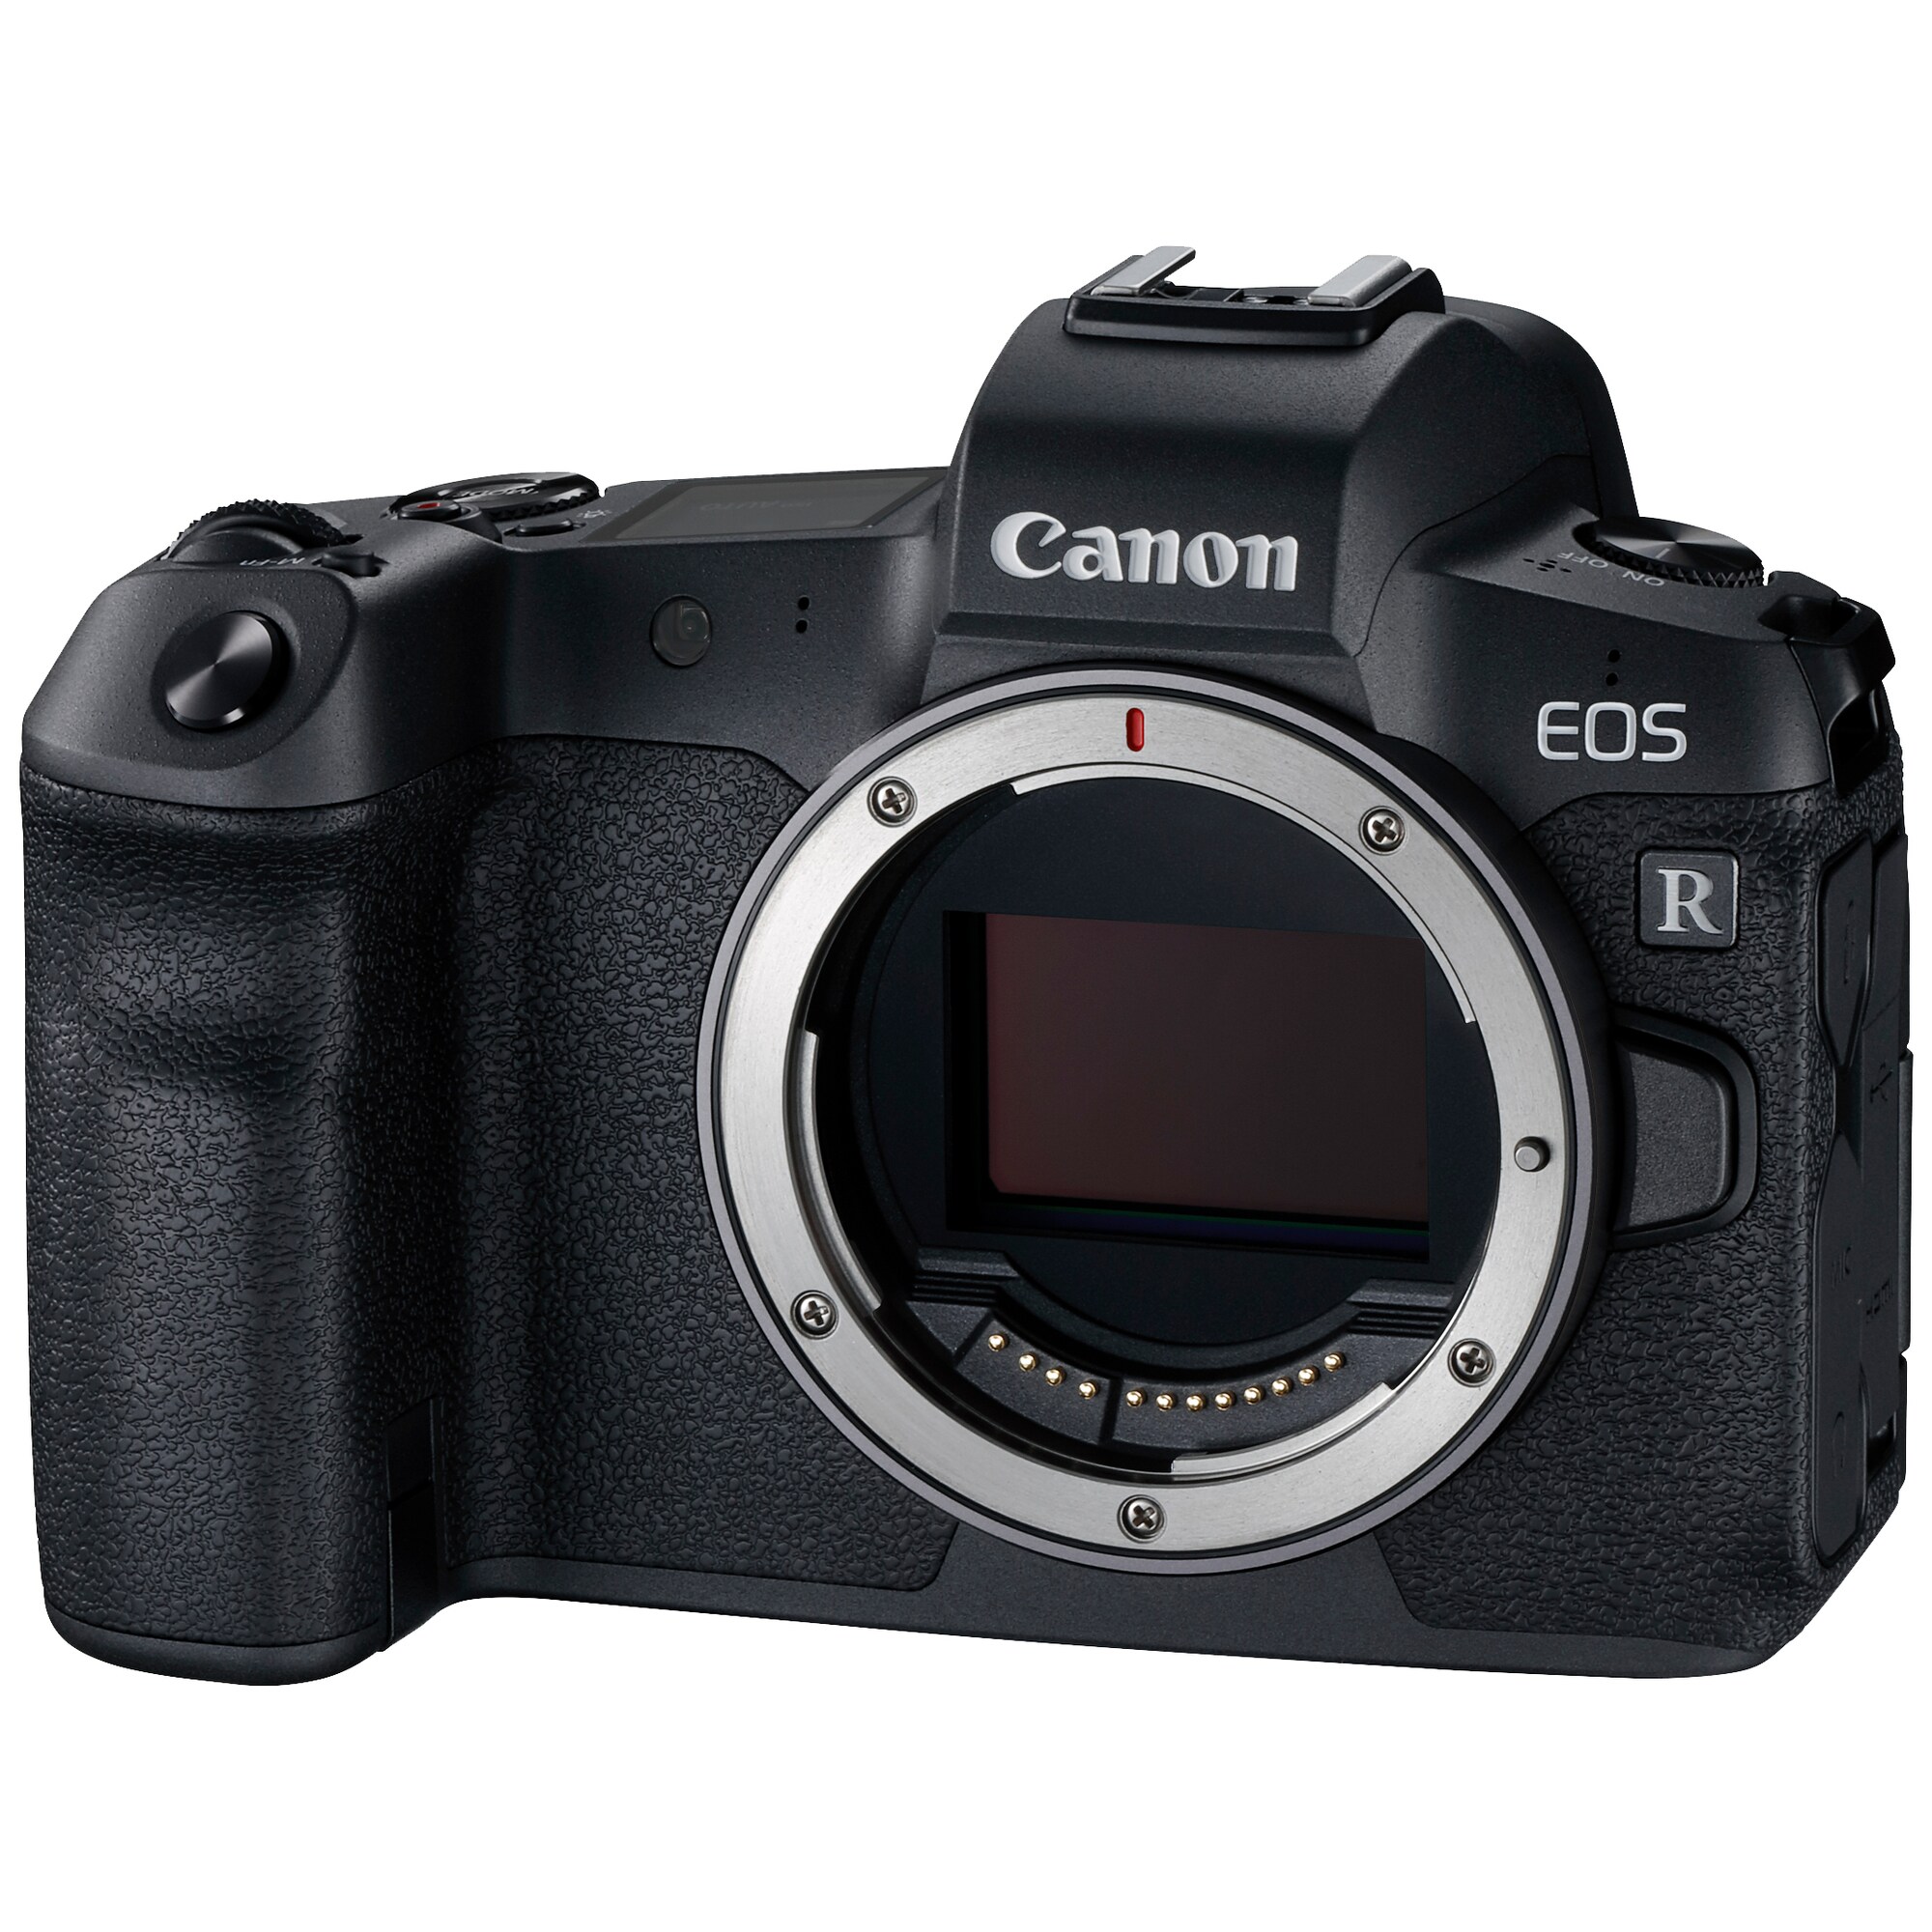 Canon EOS R peilitön kamera (runko) - Gigantti verkkokauppa